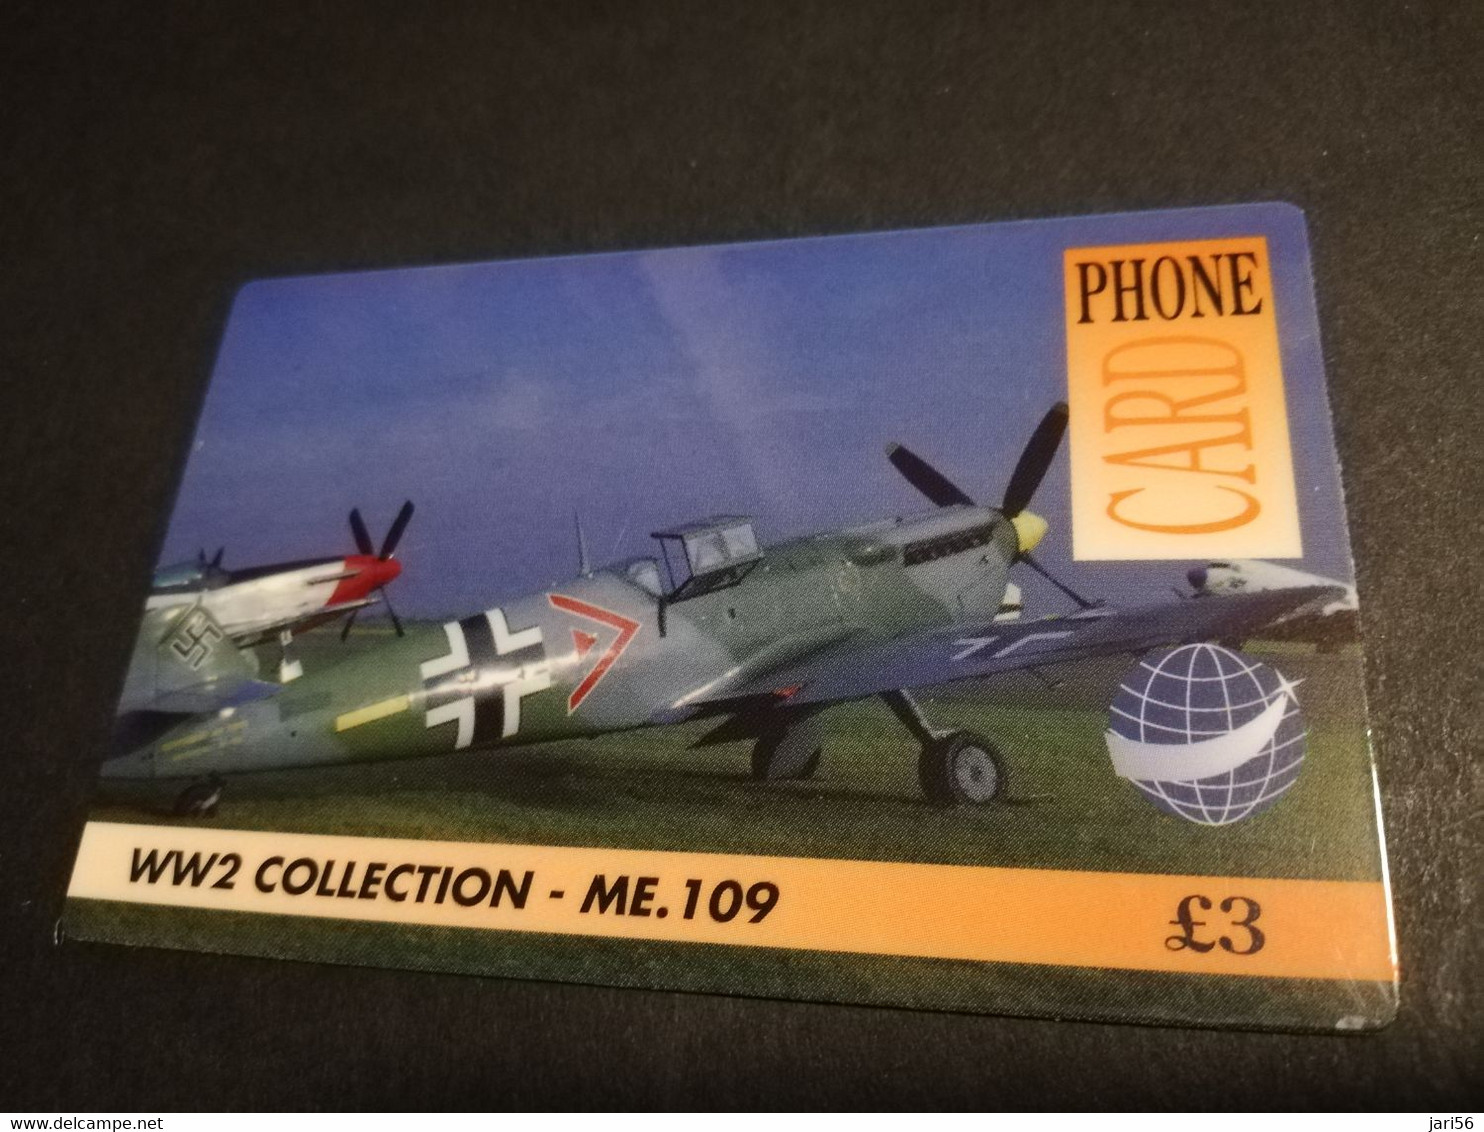 GREAT BRITAIN   3 POUND  AIR PLANES  ME-109   DIT PHONECARD    PREPAID CARD      **5916** - [10] Sammlungen